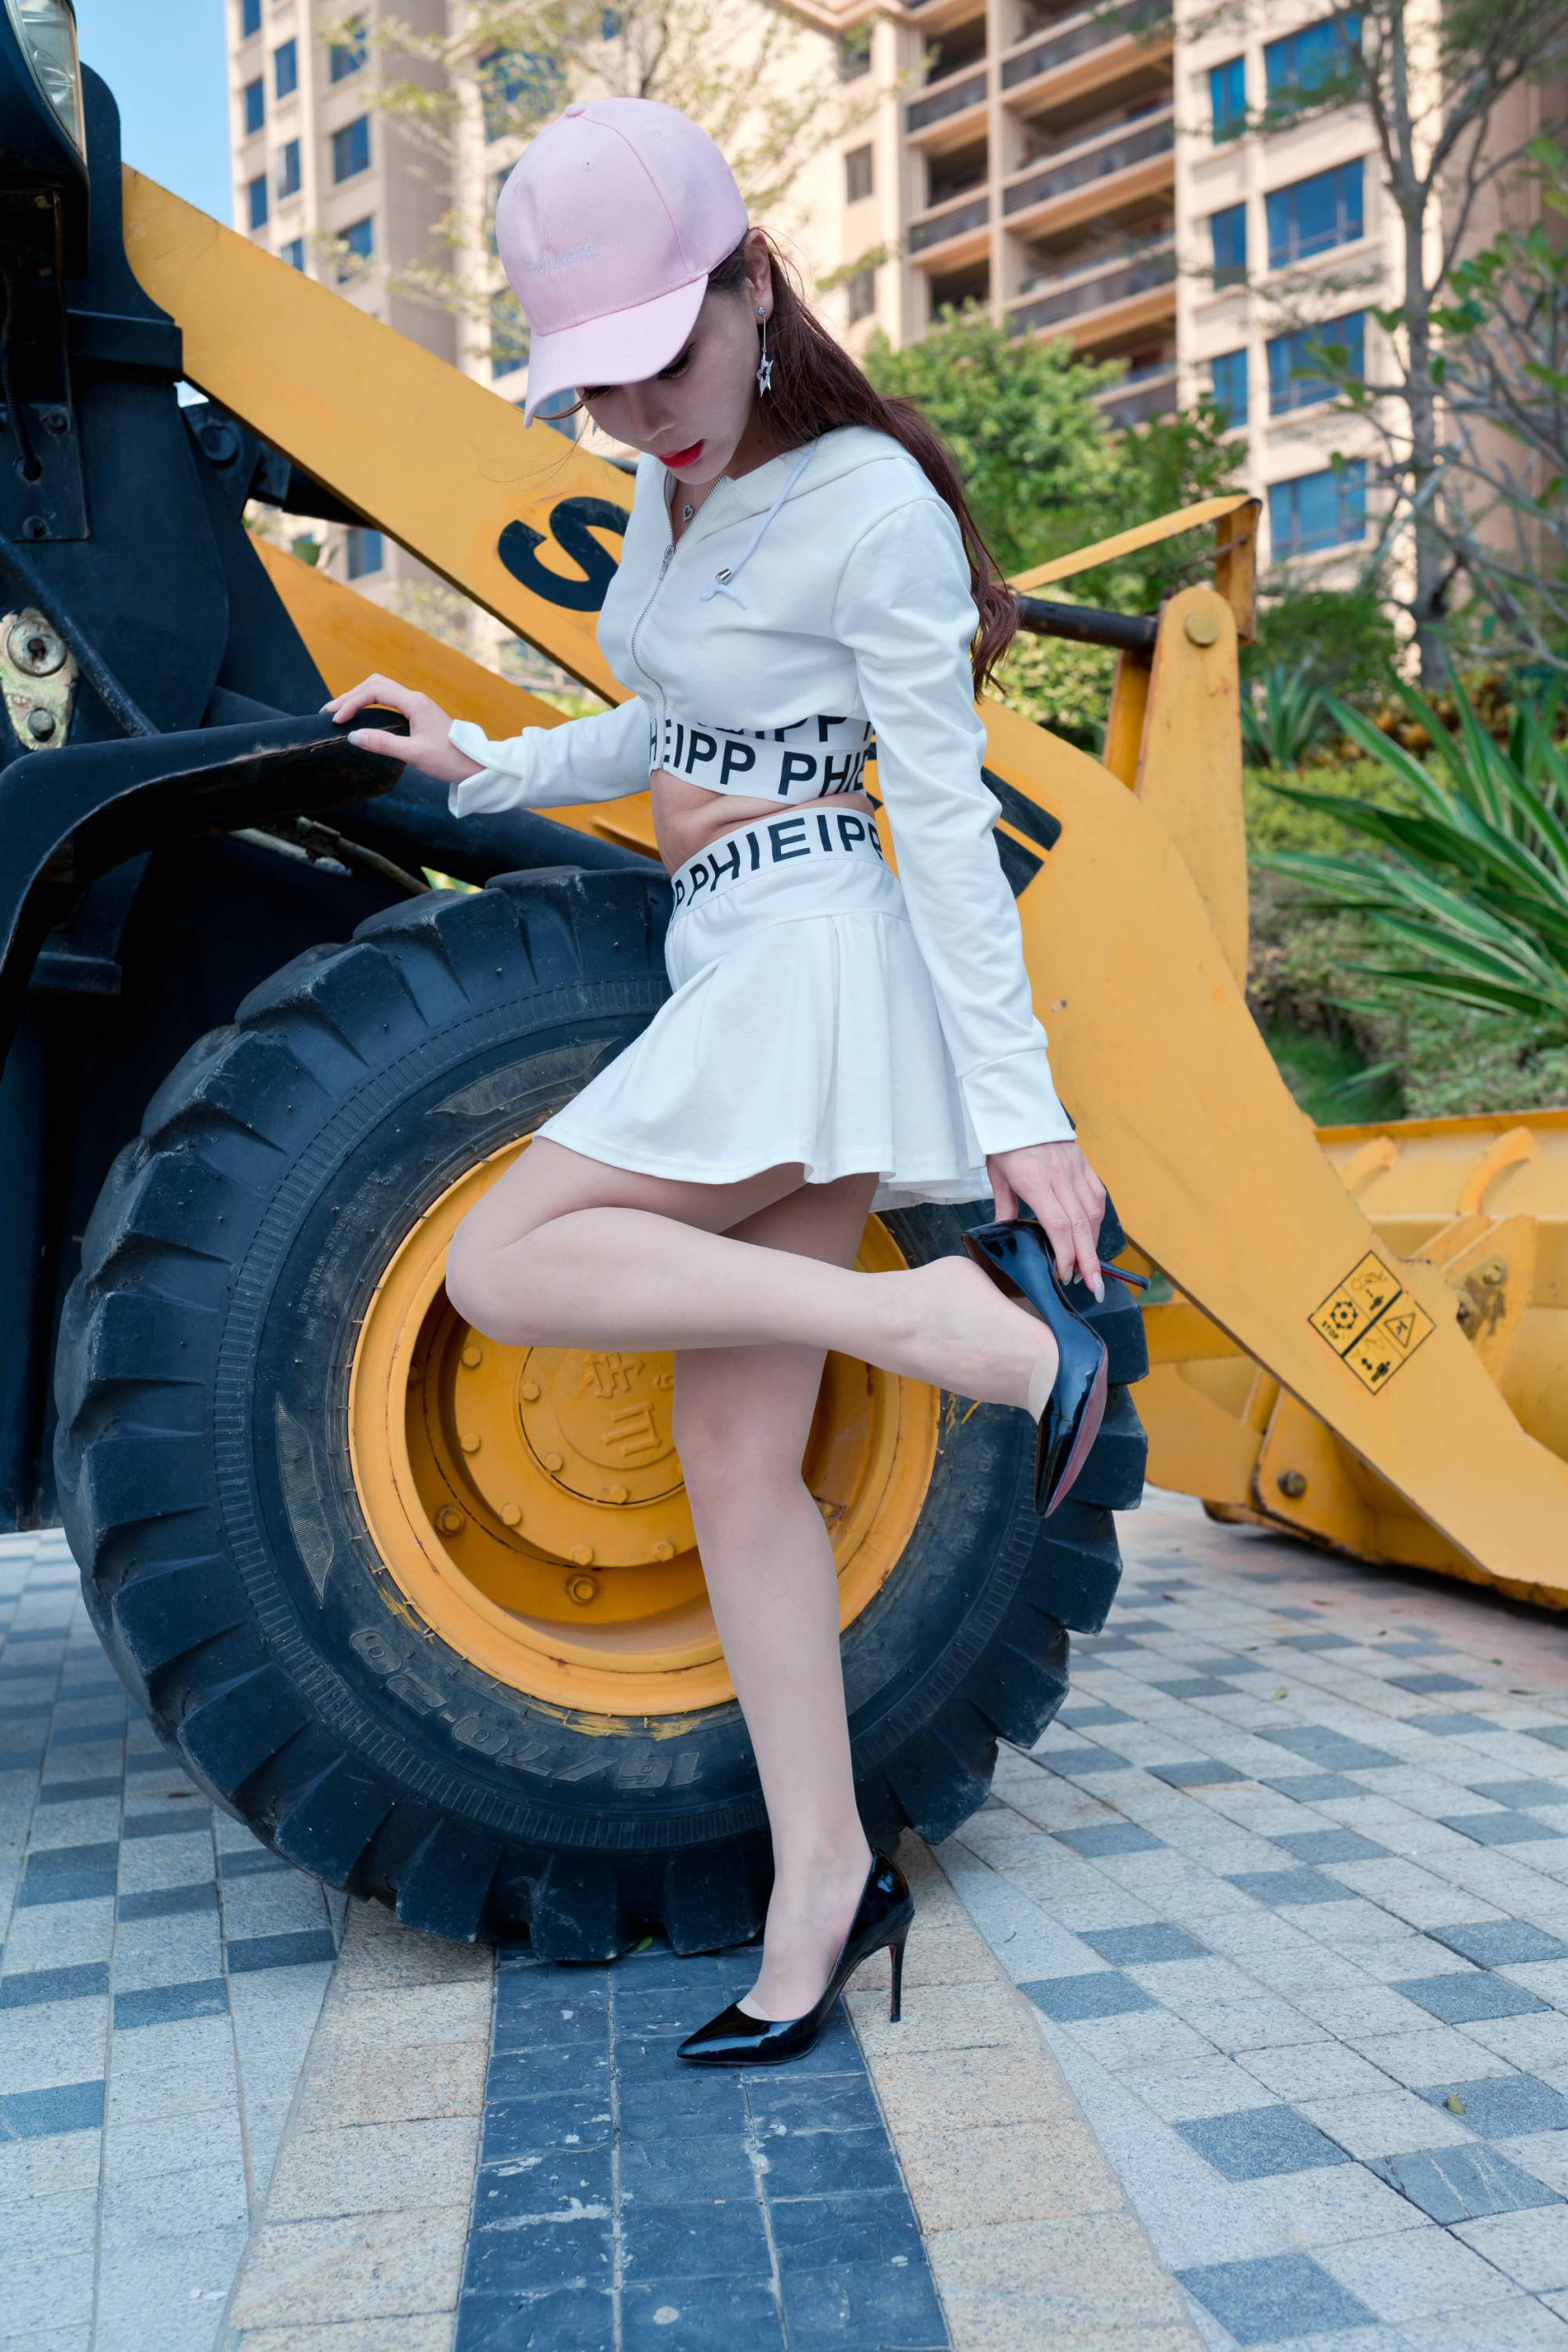 【御風街拍系列】美模 艾小青 超短裙肉絲【77P】 - 貼圖 - 絲襪美腿 -